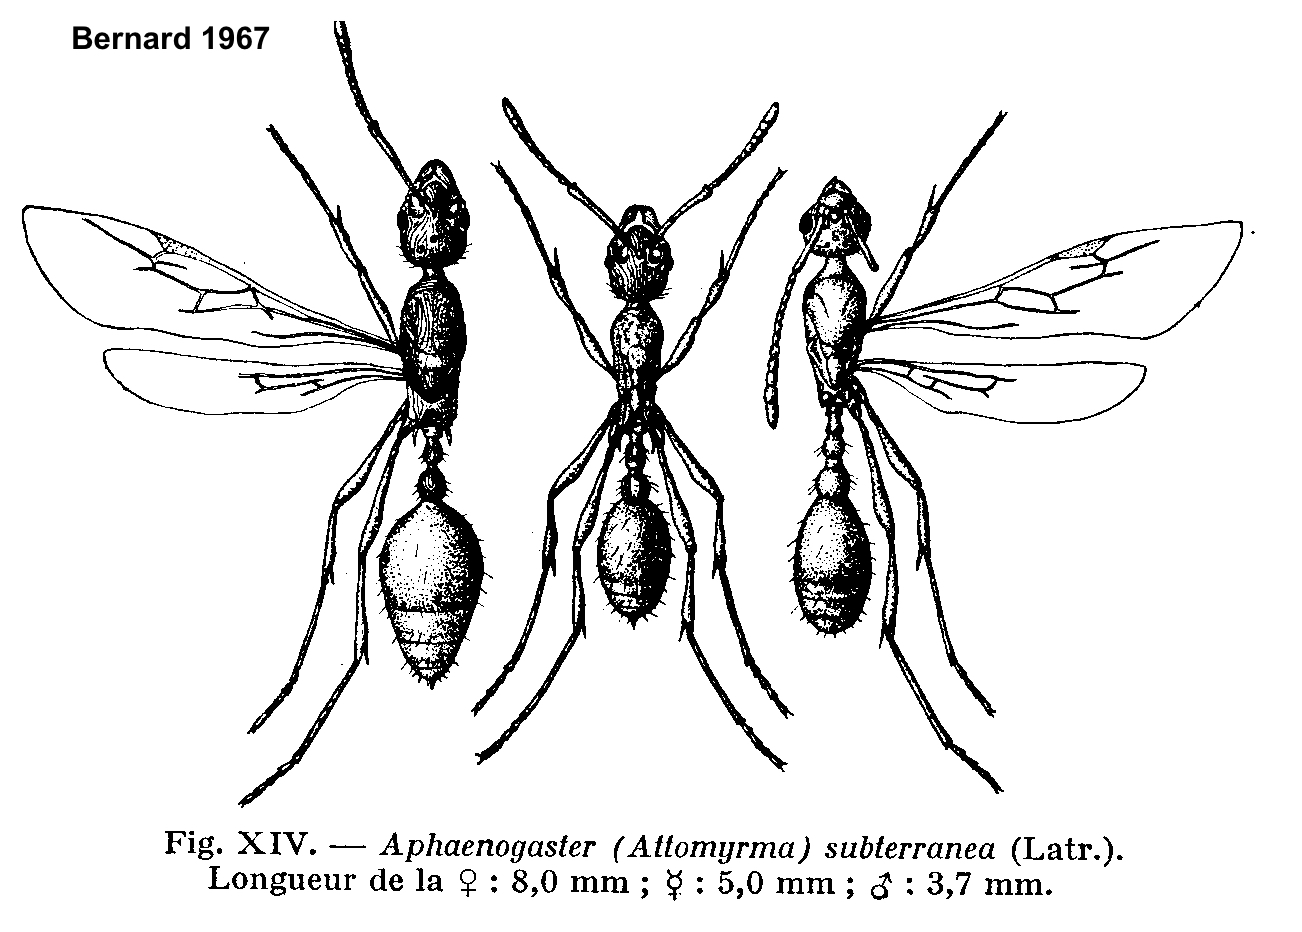 Aphaenogaster subterranea